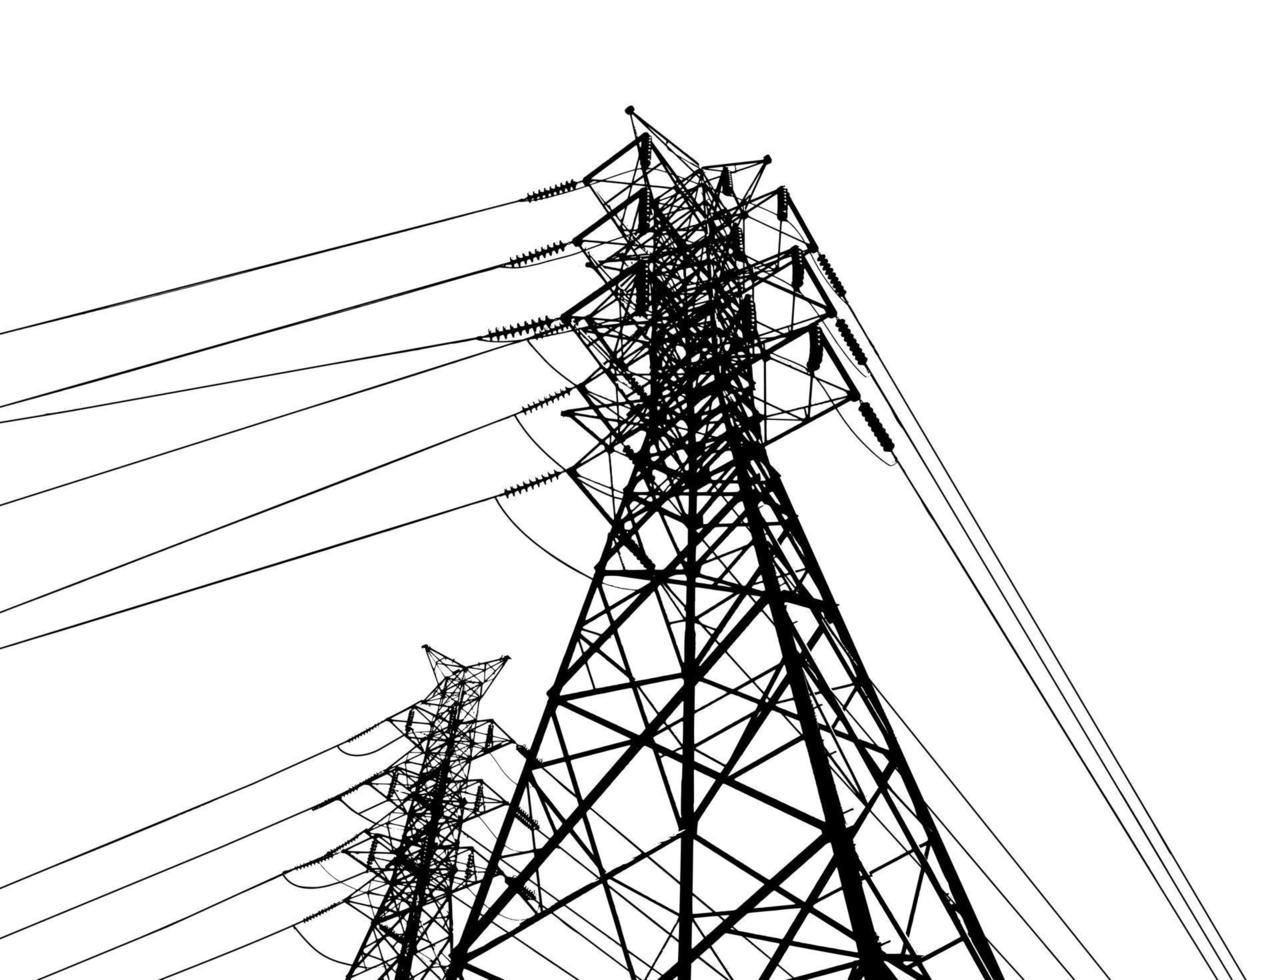 poste eléctrico .sistemas de transmisión de alto voltaje. una red de torres eléctricas de alta tensión interconectadas de transmisión de energía eléctrica. líneas suministra electricidad al texto. pilón, red de postes. vector